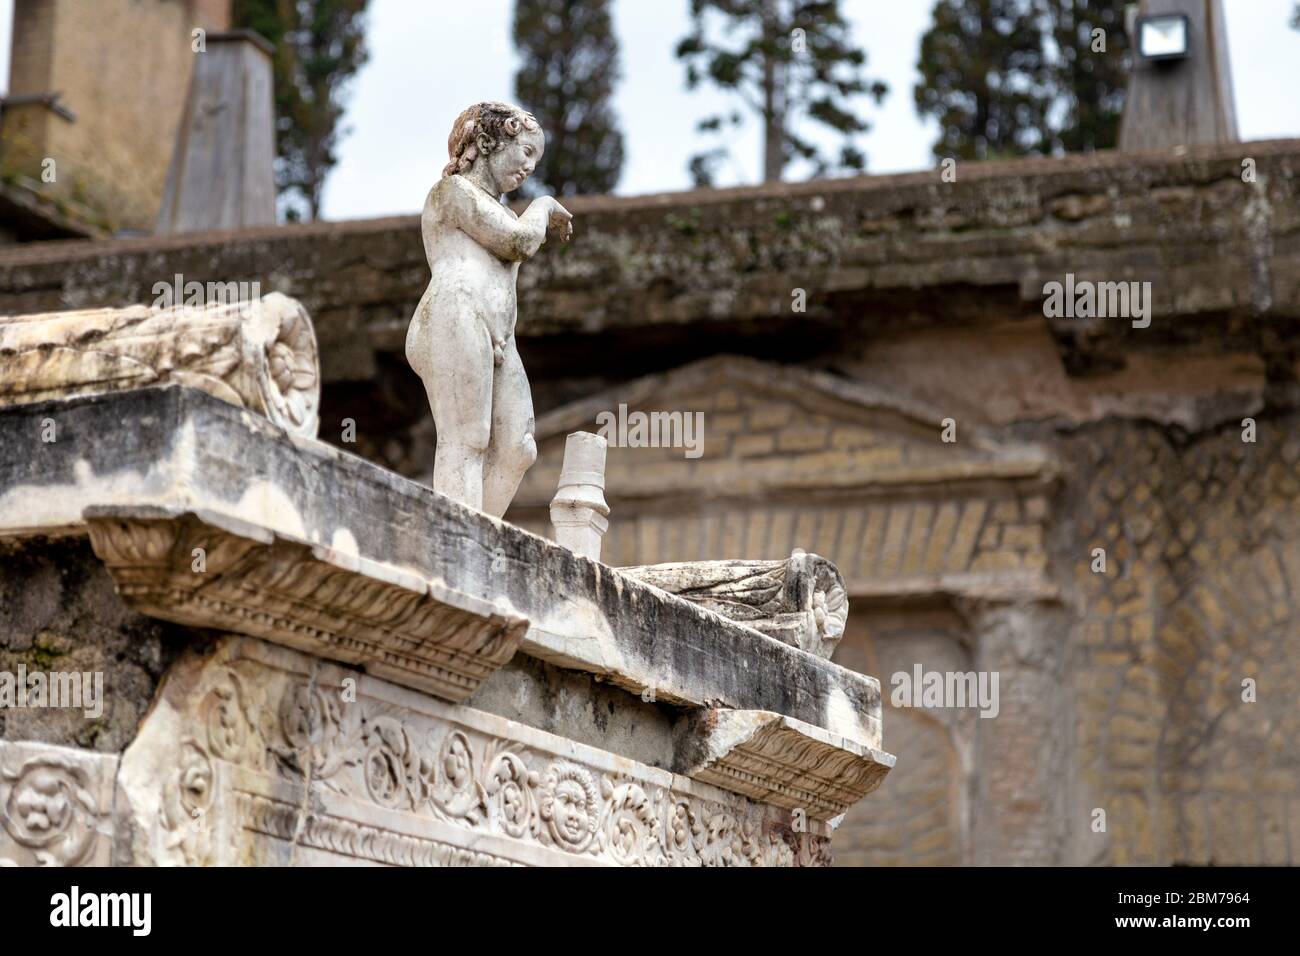 Façade ornée de maison et sculpture à la ville romaine d'Herculanum, Italie Banque D'Images